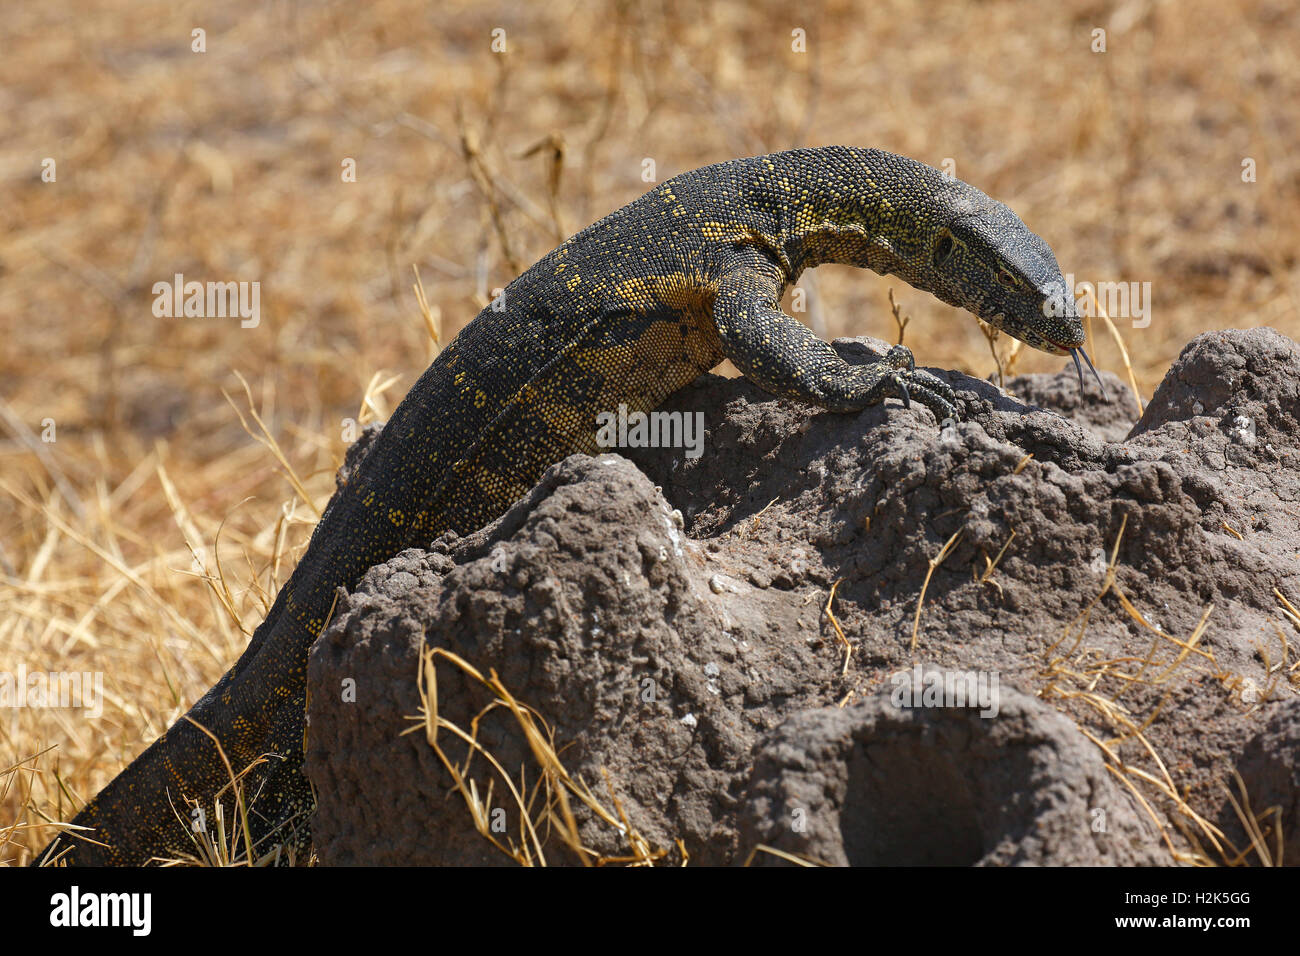 Nile monitor (Varanus niloticus), lizard, foraging, termite mound, Serengeti National Park, Tanzania Stock Photo